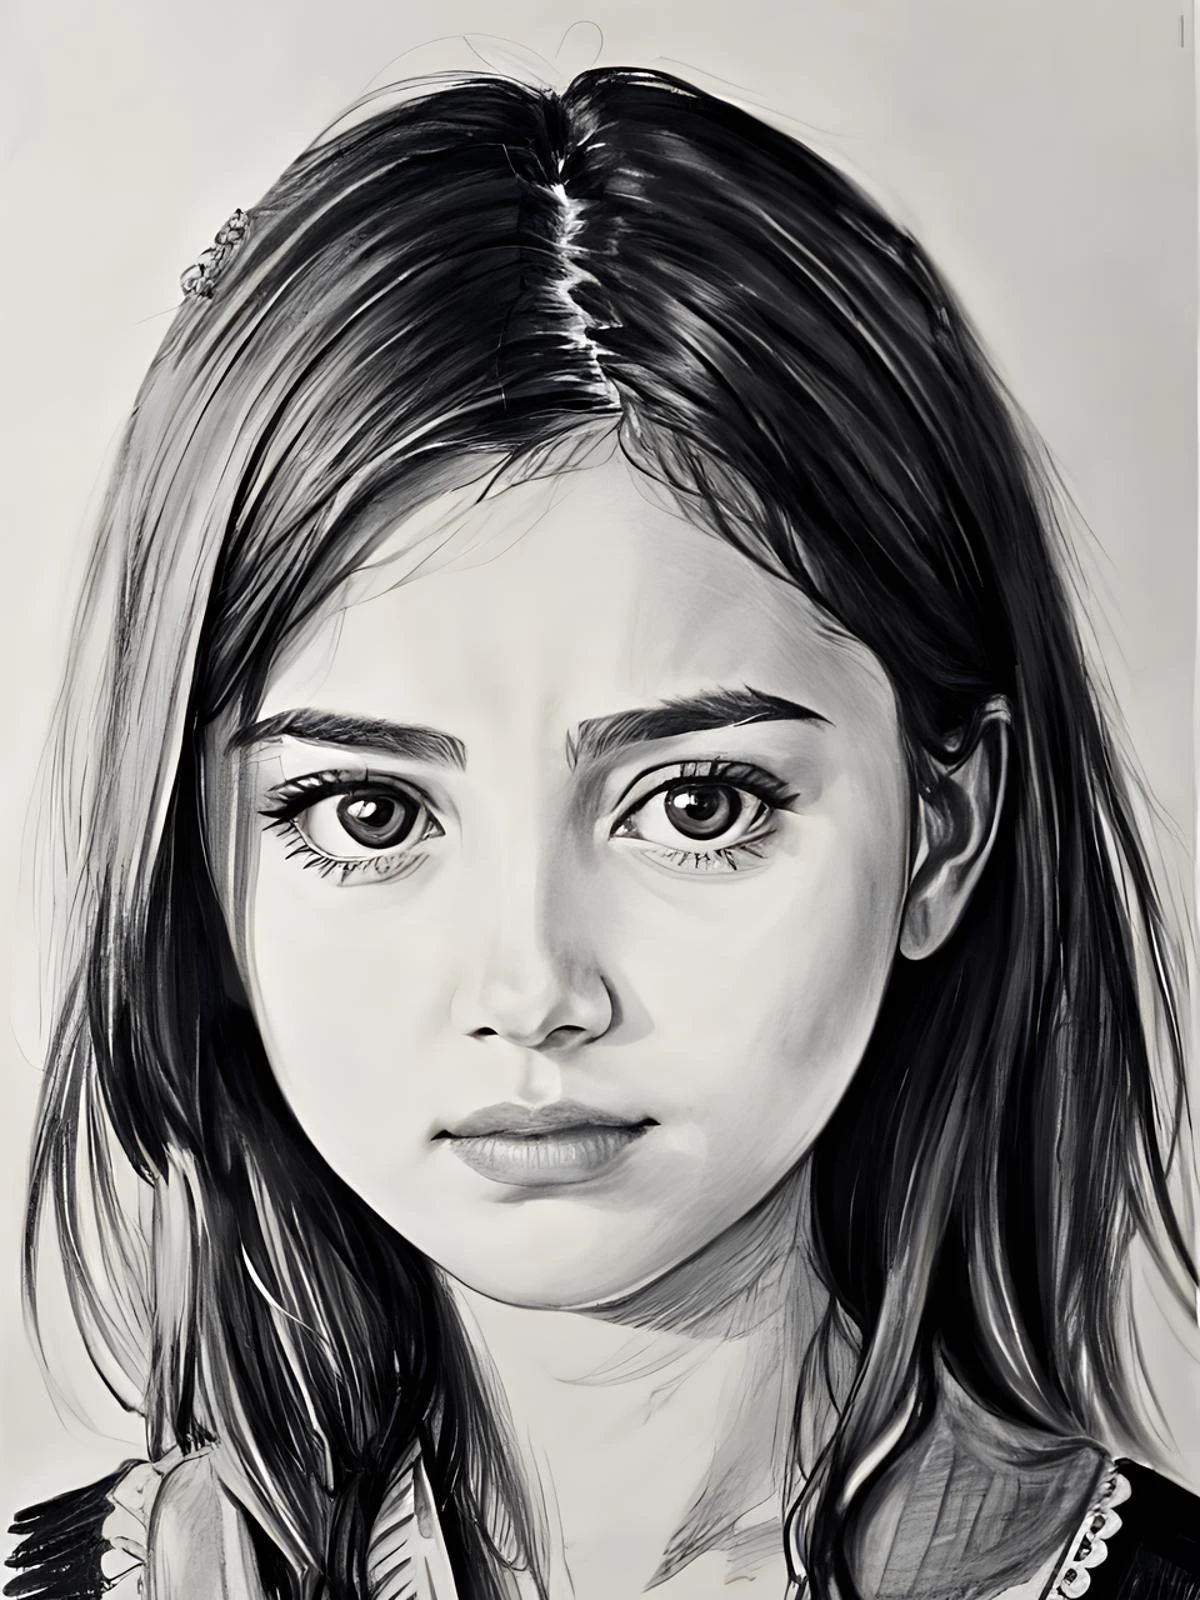 21세 소녀의 초상, 스케치, pencil 스케치, 8K, 뒤얽힌, 최고의 품질, 터무니없는, 연필 그림, 걸작, 높은 디테일, 예쁜 얼굴, 슬픈 표정